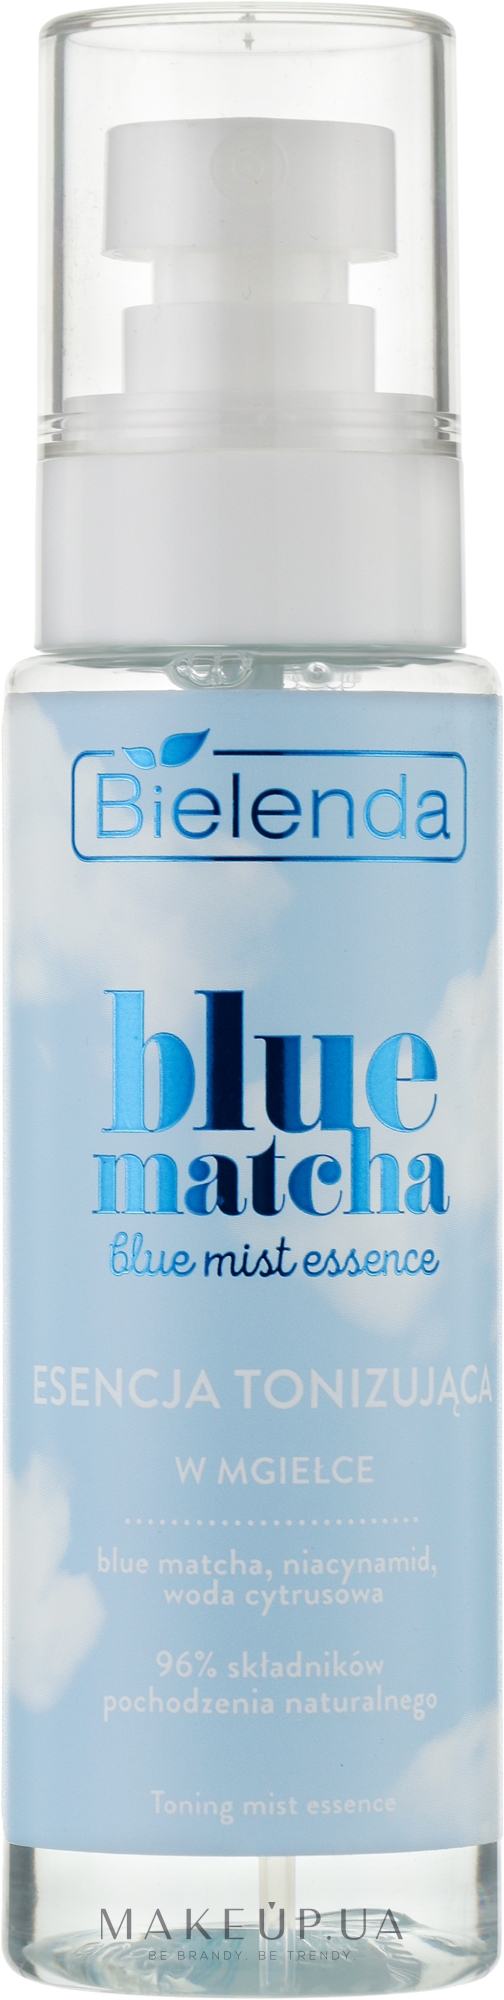 Есенція тонізувальна для обличчя - Bielenda Blue Matcha Blue Mist Essence — фото 100ml